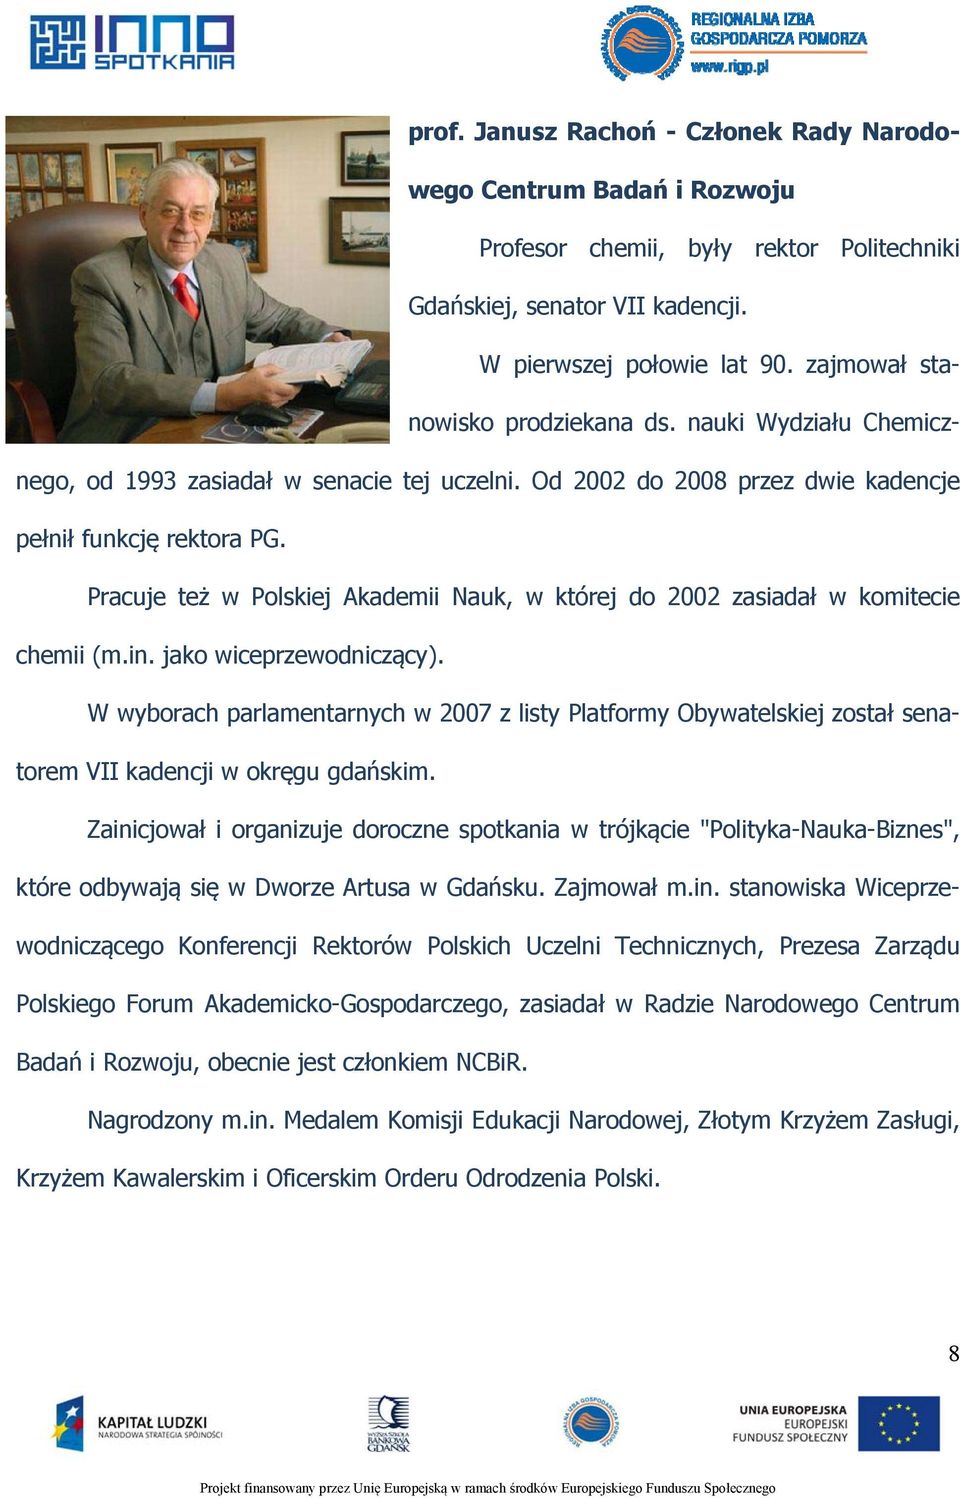 Pracuje też w Polskiej Akademii Nauk, w której do 2002 zasiadał w komitecie chemii (m.in. jako wiceprzewodniczący).